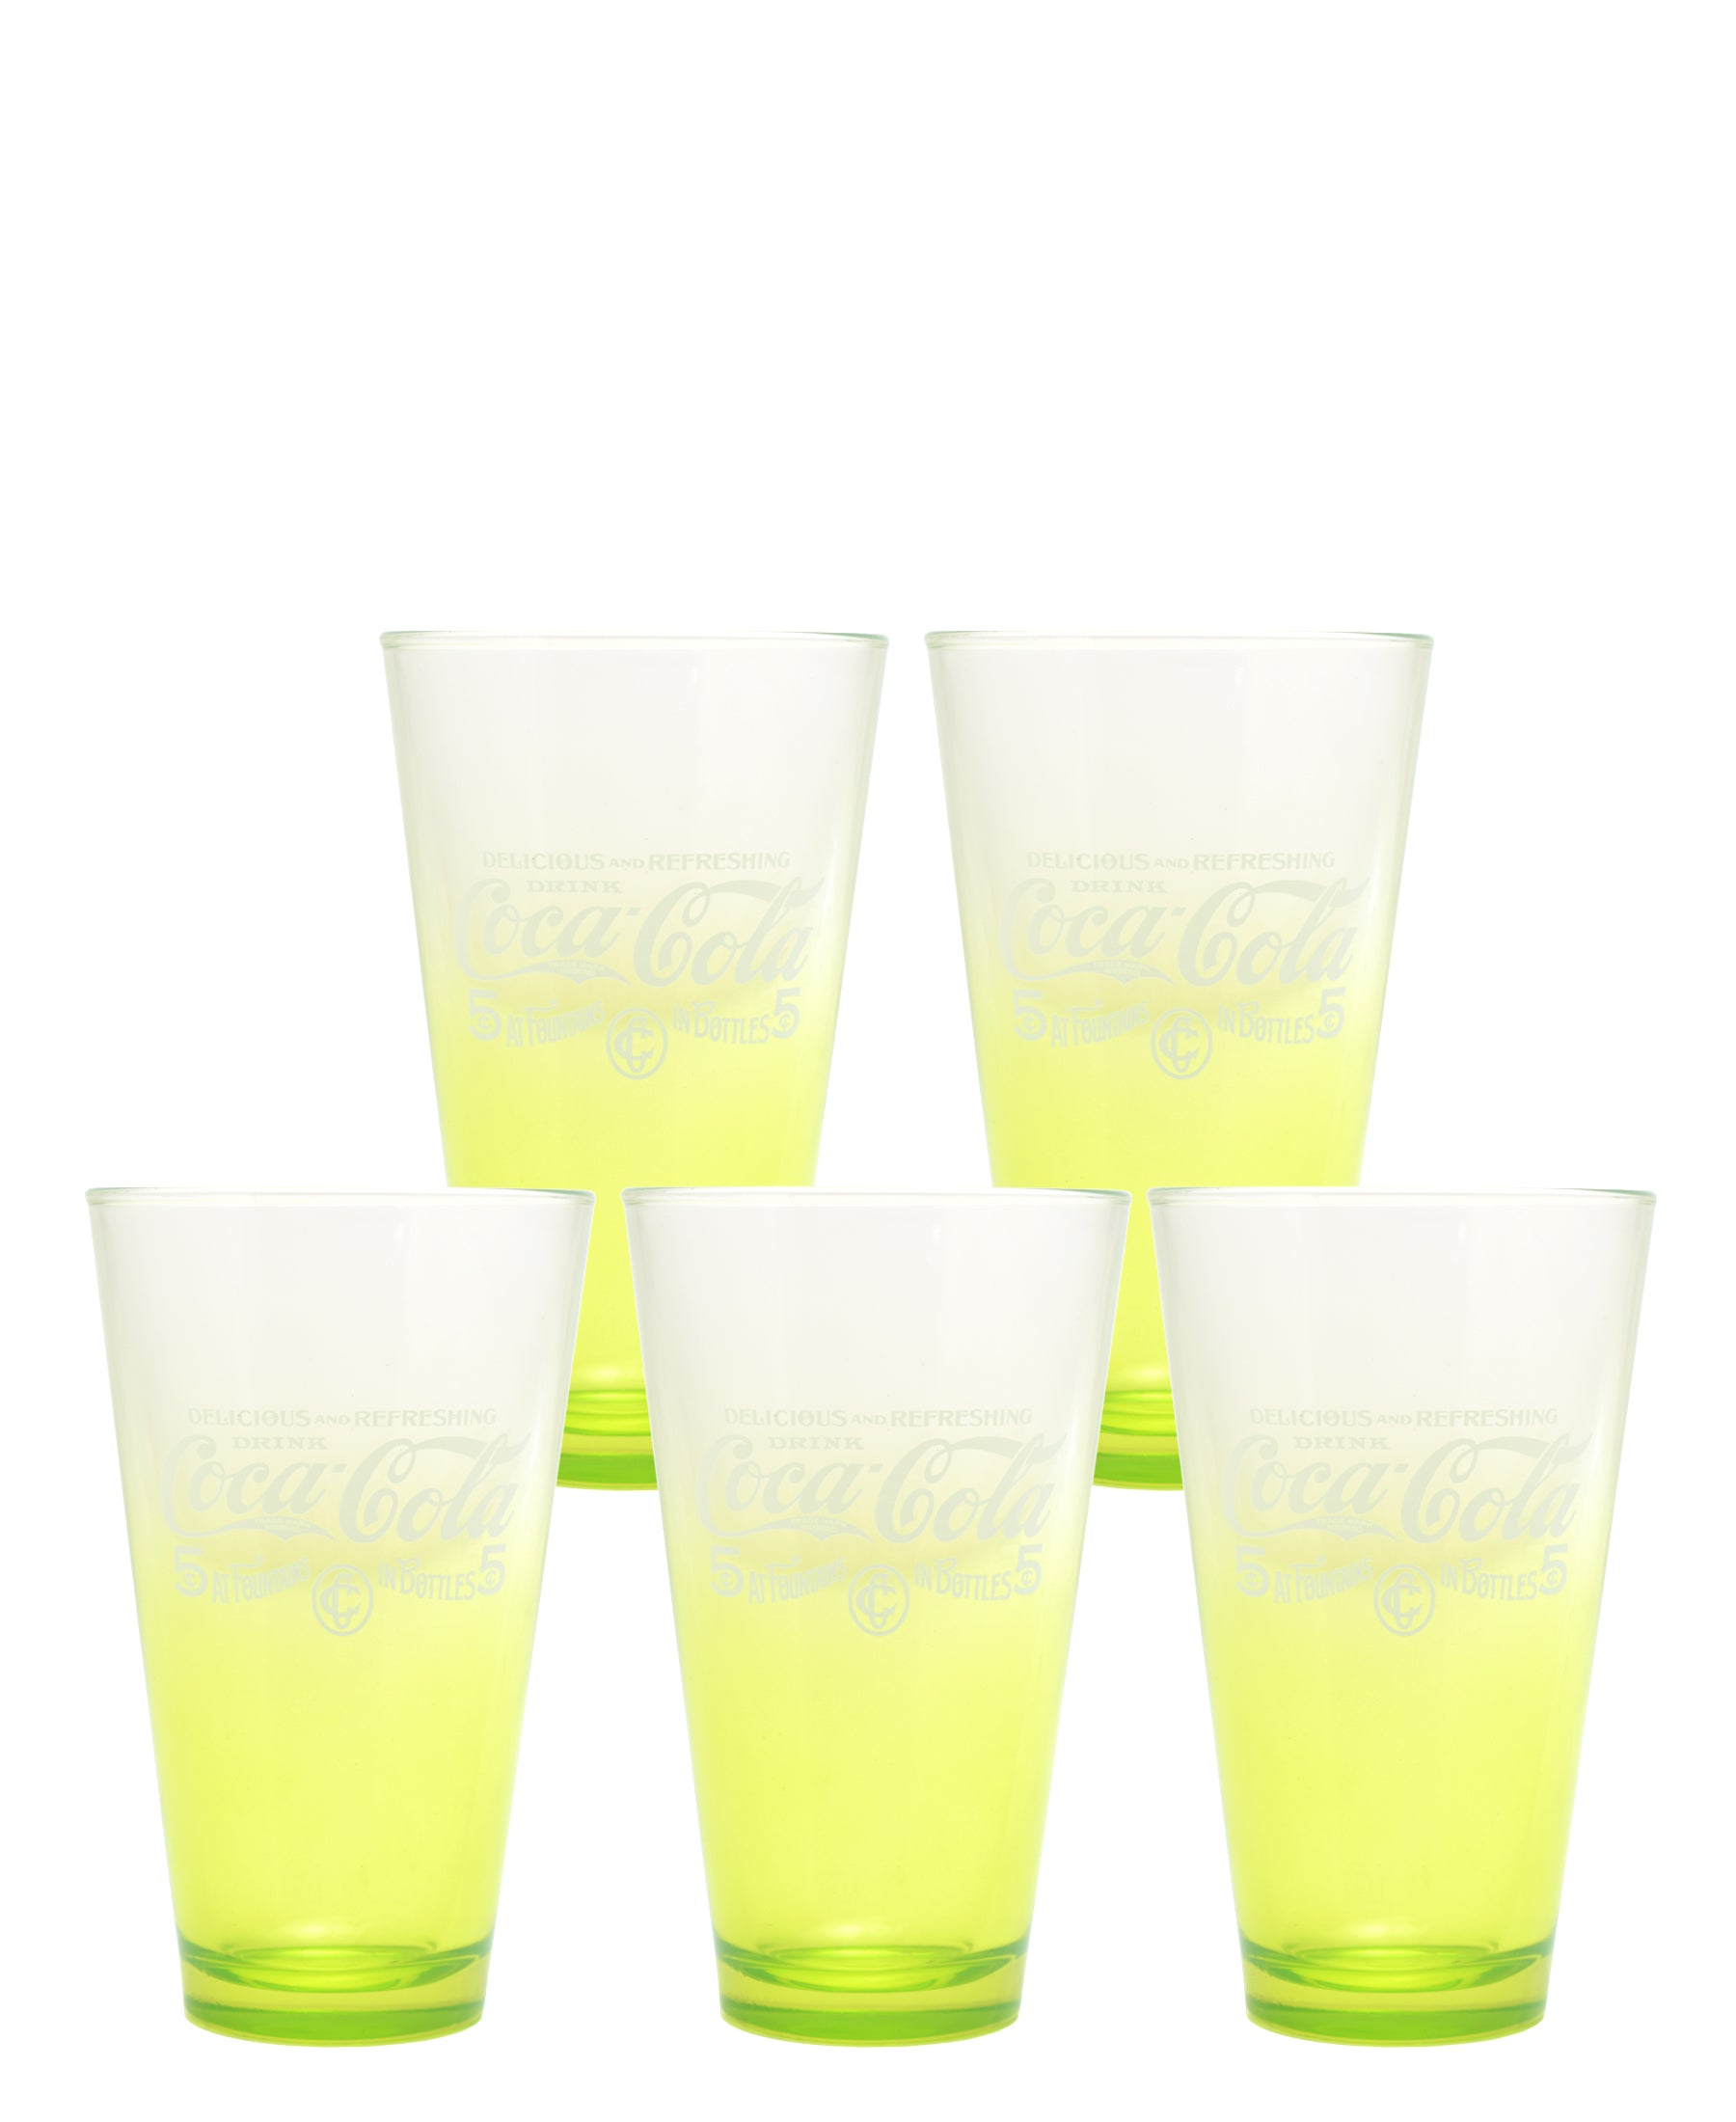 Retro Coca Cola Glass Set Of 5 - Lime